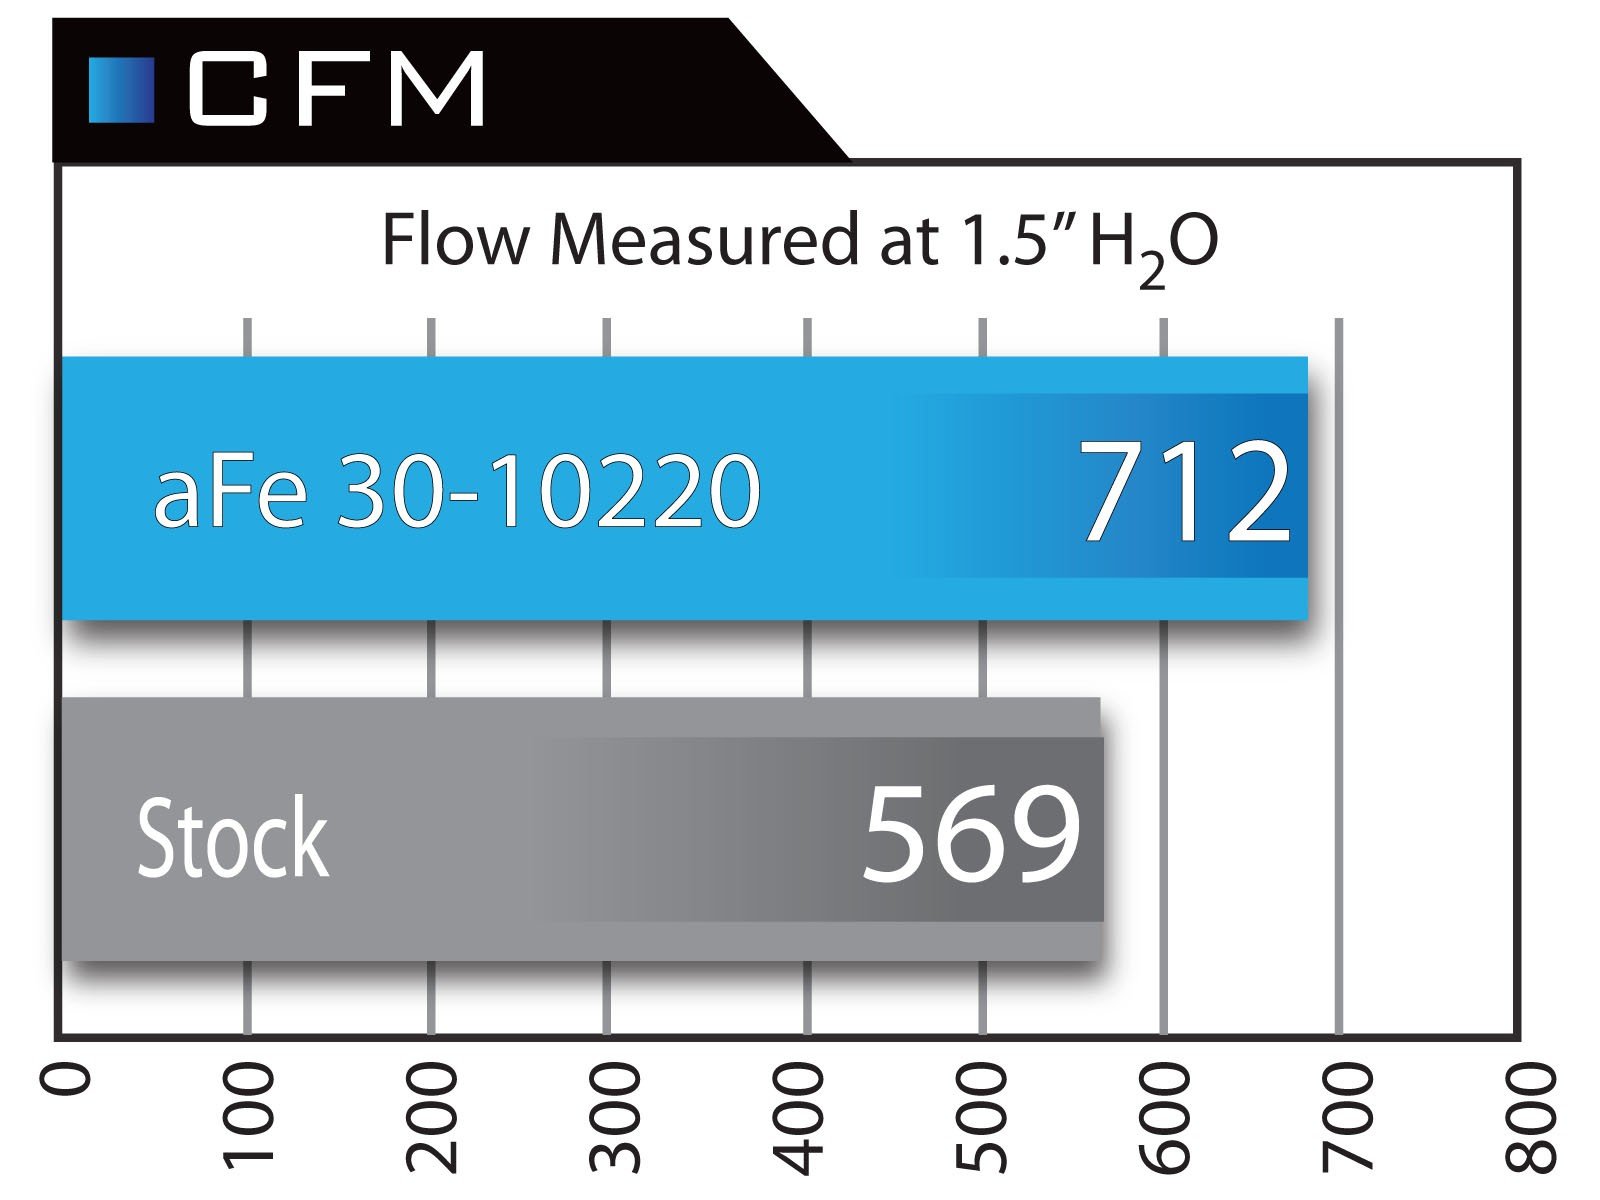 AFE31-0220 aFe POWER Magnum FLOW Pro DRY S Air Filter for 2011-2013 Dodge Challenger/Charger V6/V8